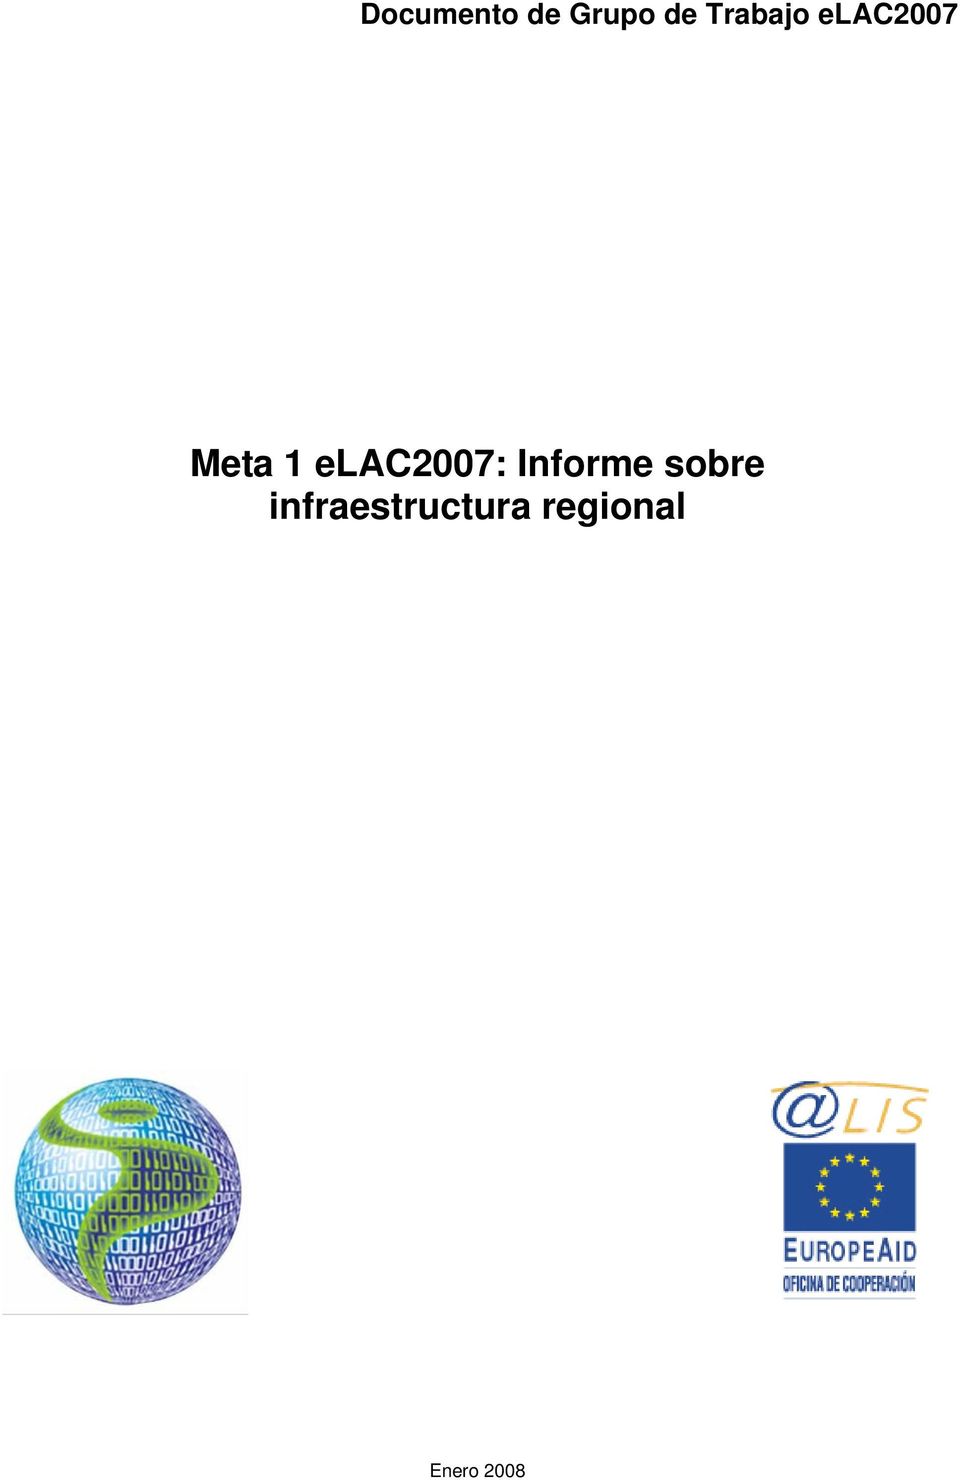 elac2007: Informe sobre